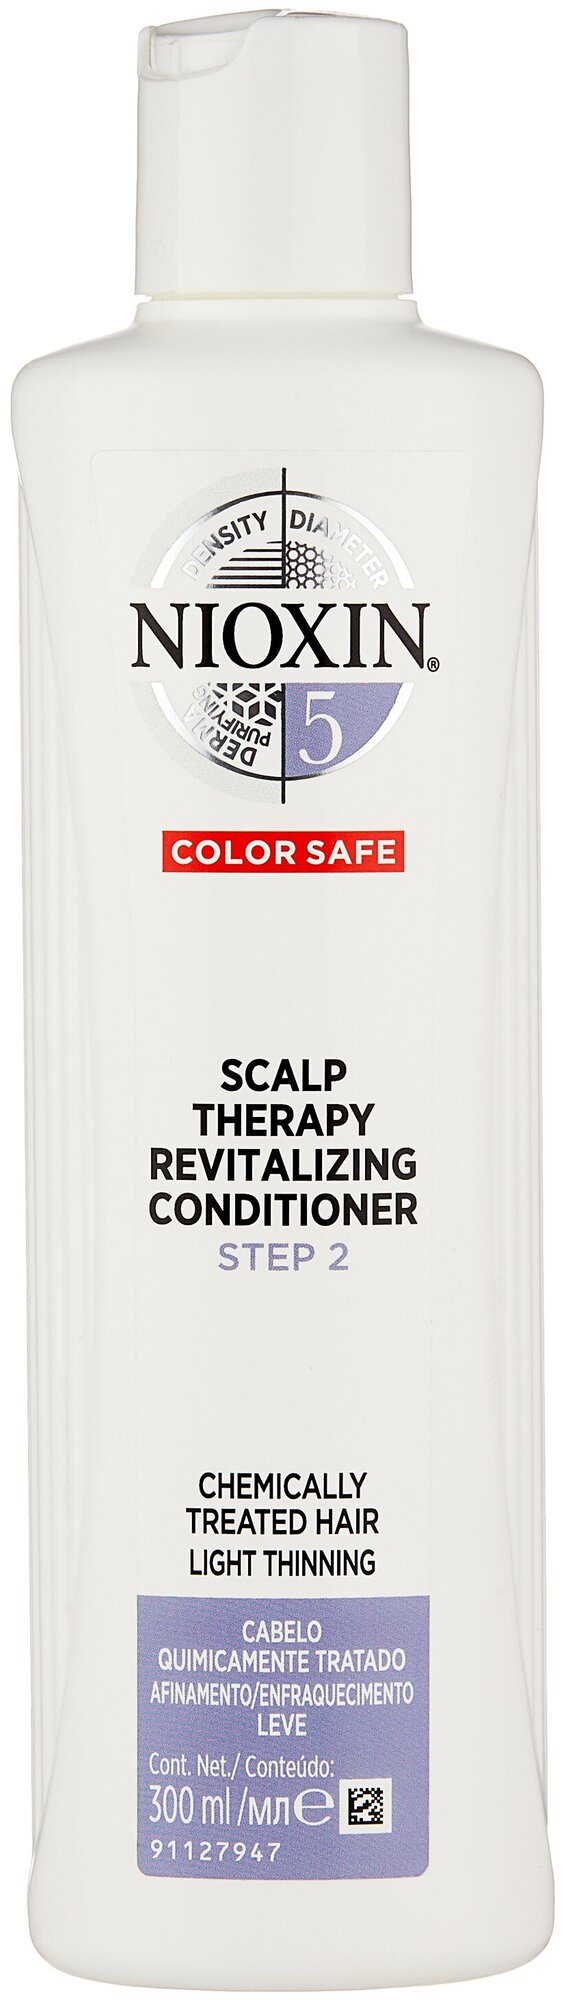 Nioxin кондиционер Scalp Therapy Conditioner System 5 для химически обработанных с тенденцией к истончению волос